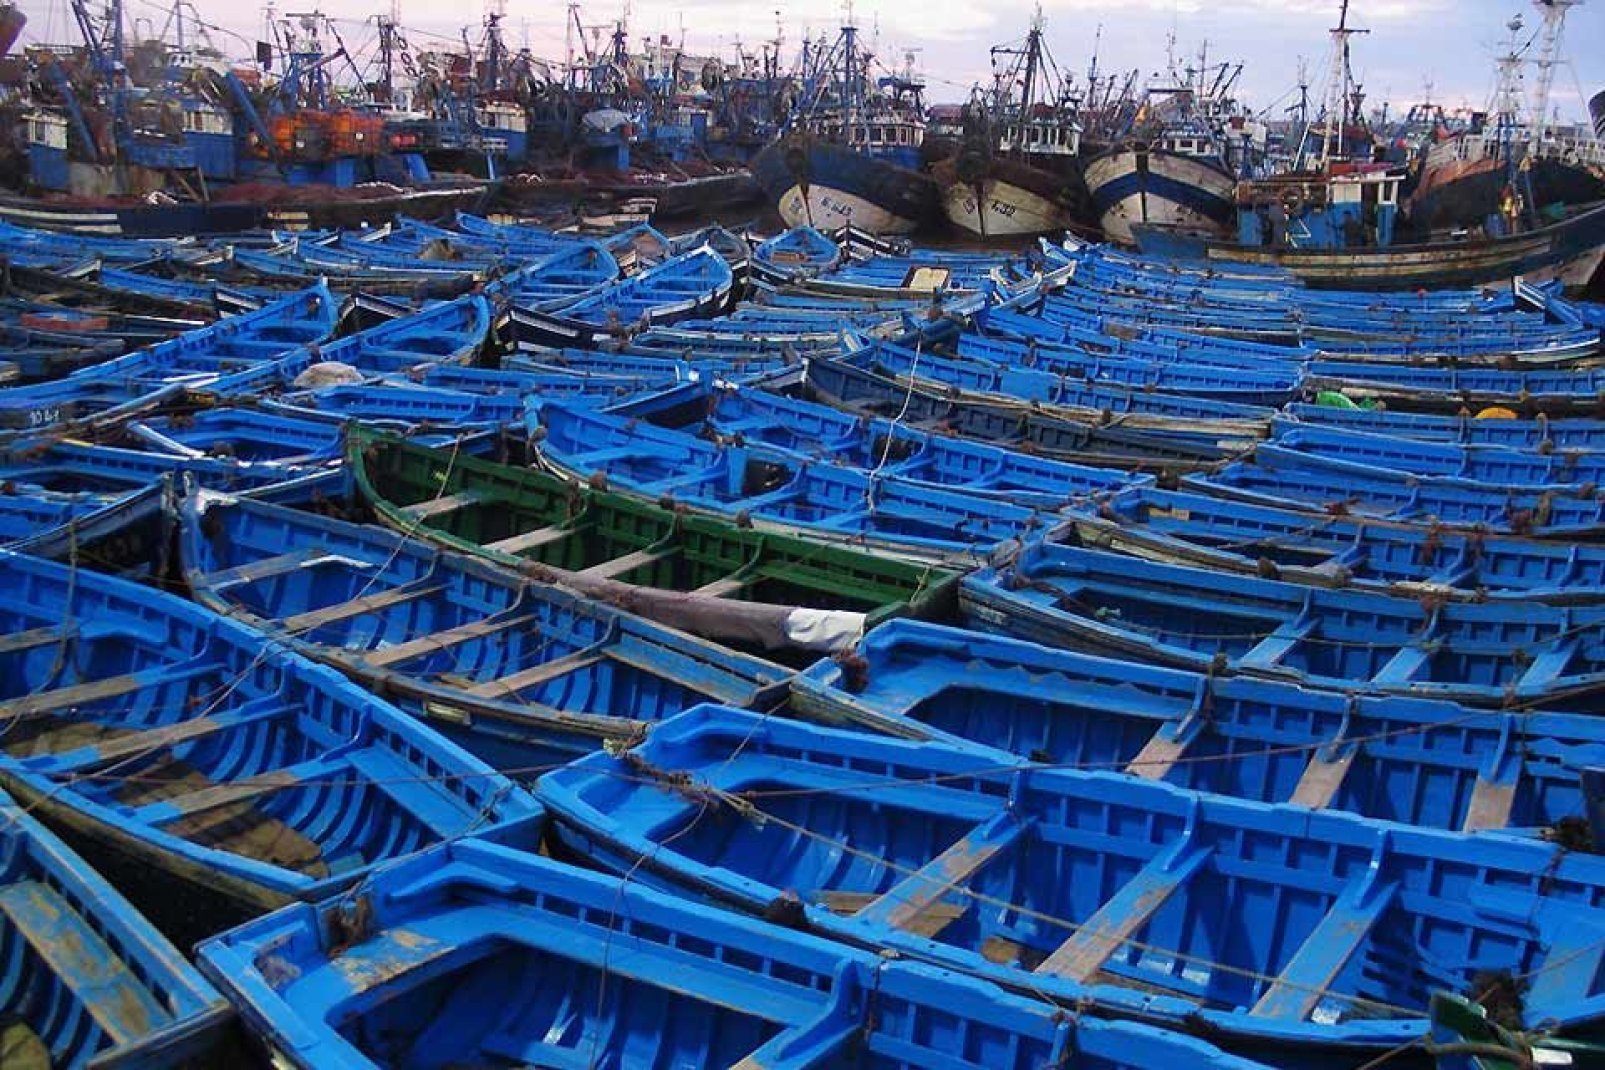 Questo porto dedicato alla pesca tradizionale è tutto dipinto di blu, poiché si pensa che questo colore riesca ad ingannare le sardine.